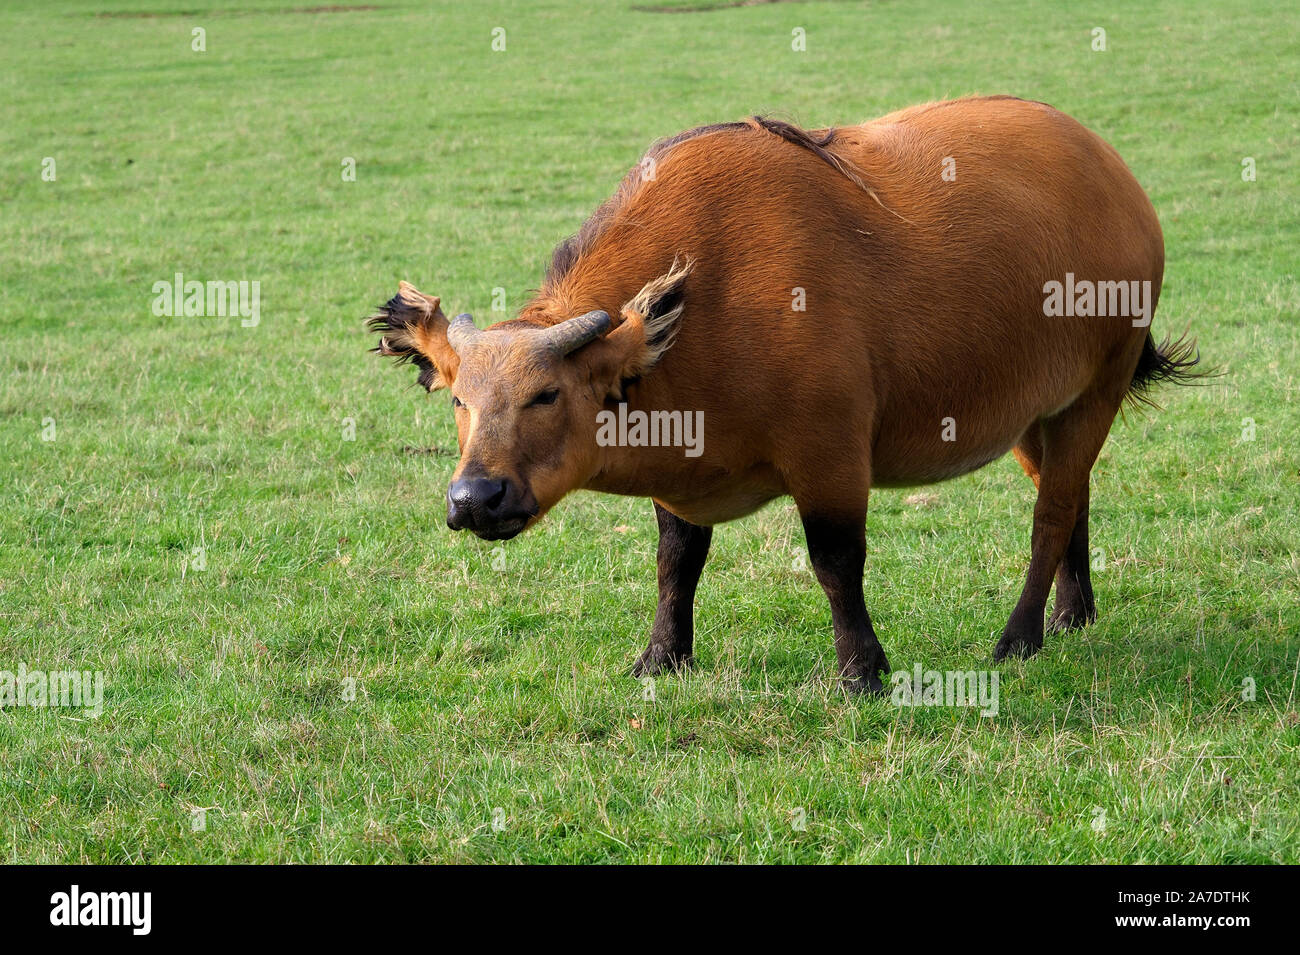 Foresta Africana di Buffalo, Syncerus caffer nanus, unico mammifero su erba, captive, Ottobre 2019 Foto Stock